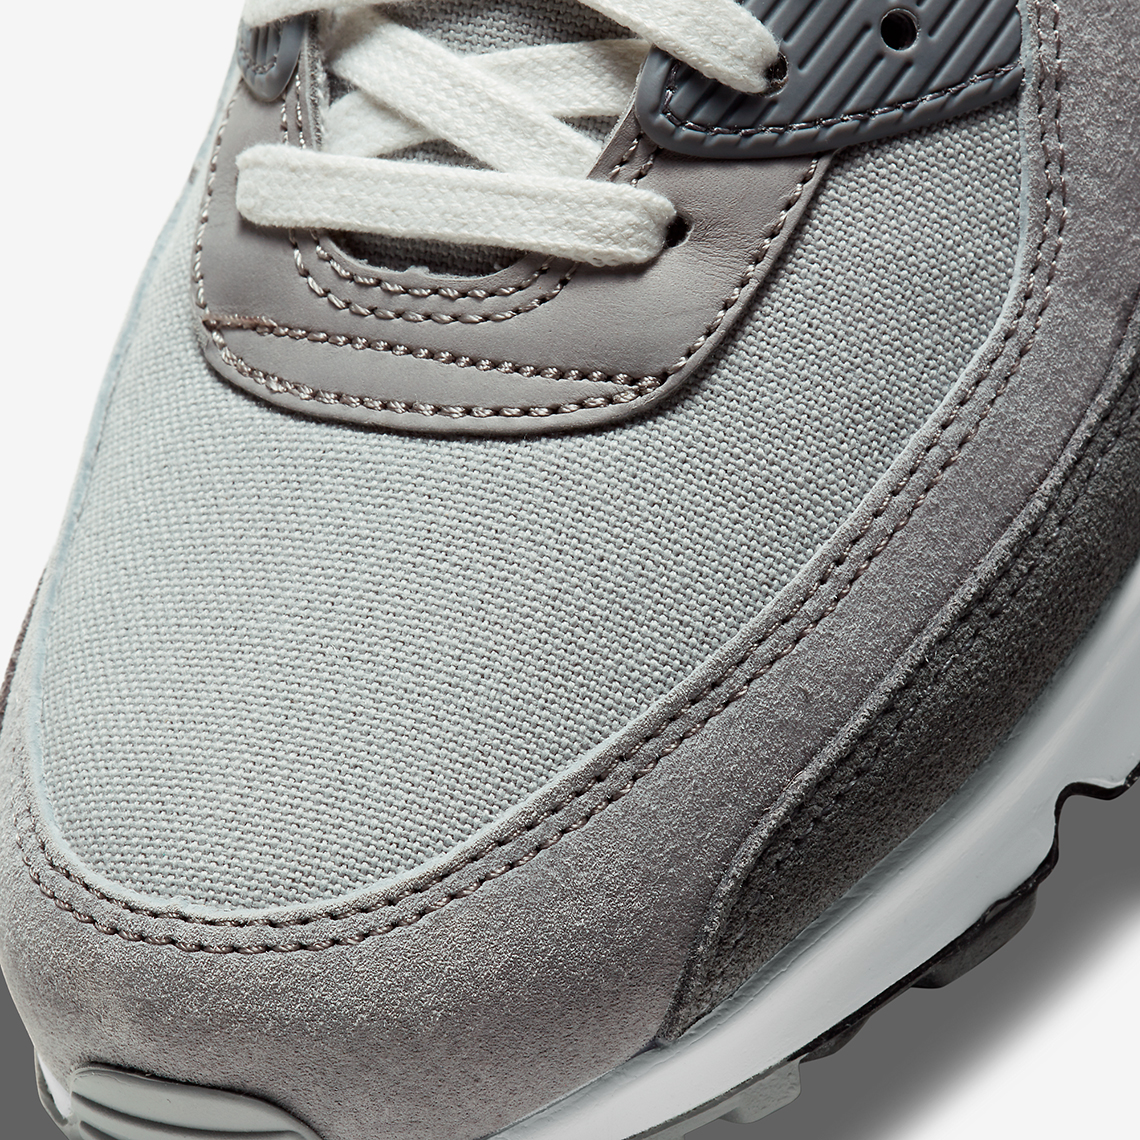 Nike Air Max 90 Light Smoke Grey DA1641-001 Release Info | SneakerNews.com